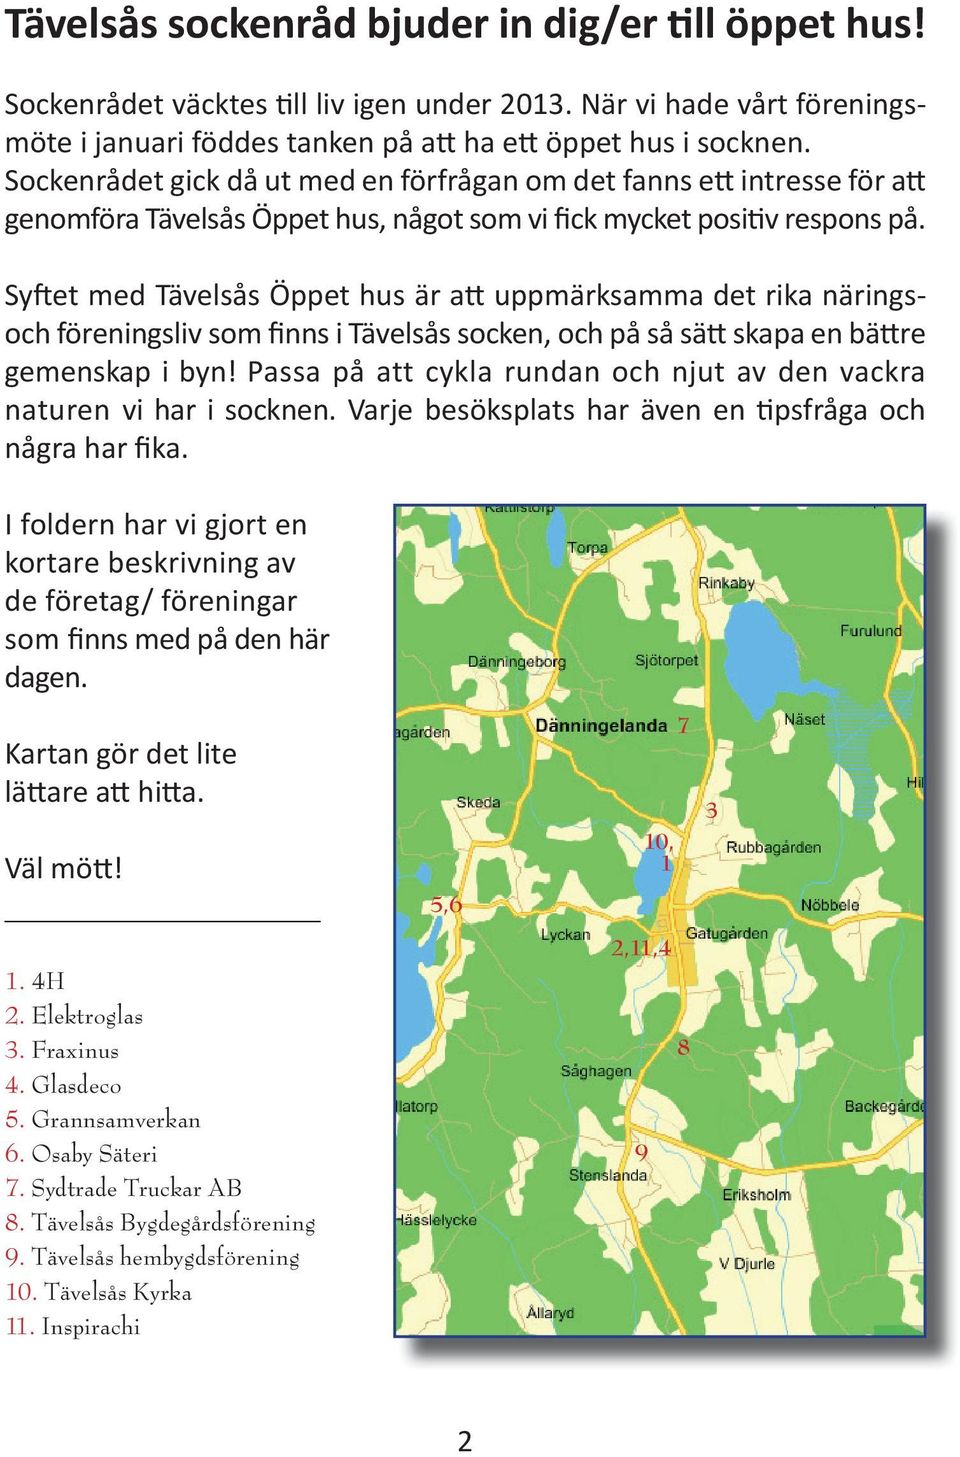 Syftet med Tävelsås Öppet hus är att uppmärksamma det rika näringsoch föreningsliv som finns i Tävelsås socken, och på så sätt skapa en bättre gemenskap i byn!